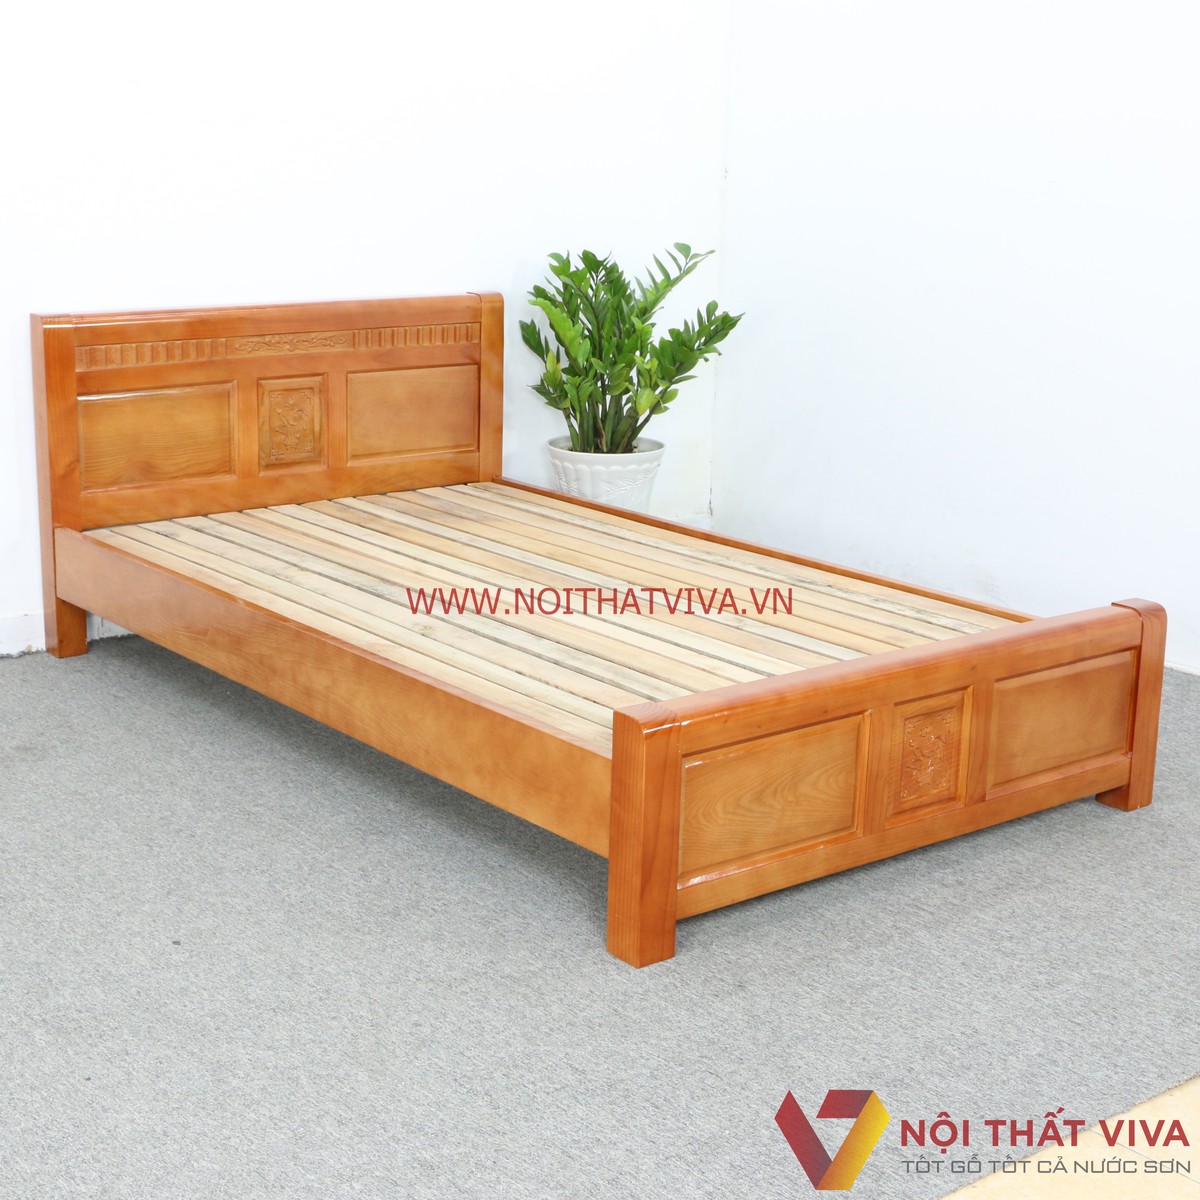 Cần lưu ý gì để chọn đúng giường 1m2 gỗ Sồi vừa rẻ vừa bền?